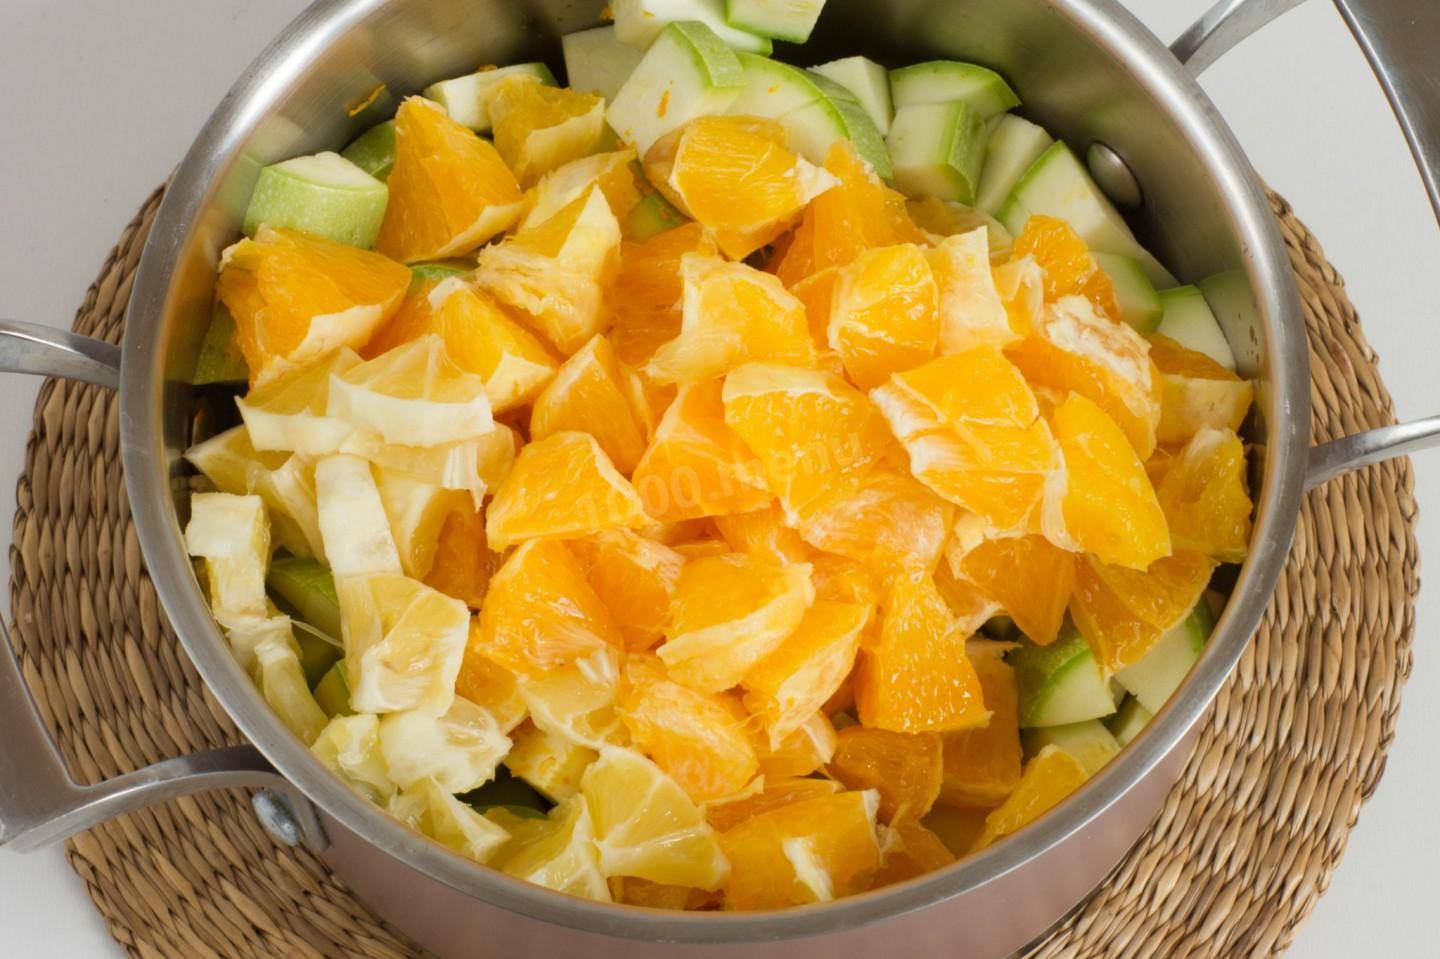 10 лучших рецептов приготовления варенья из кабачков с лимоном и апельсином